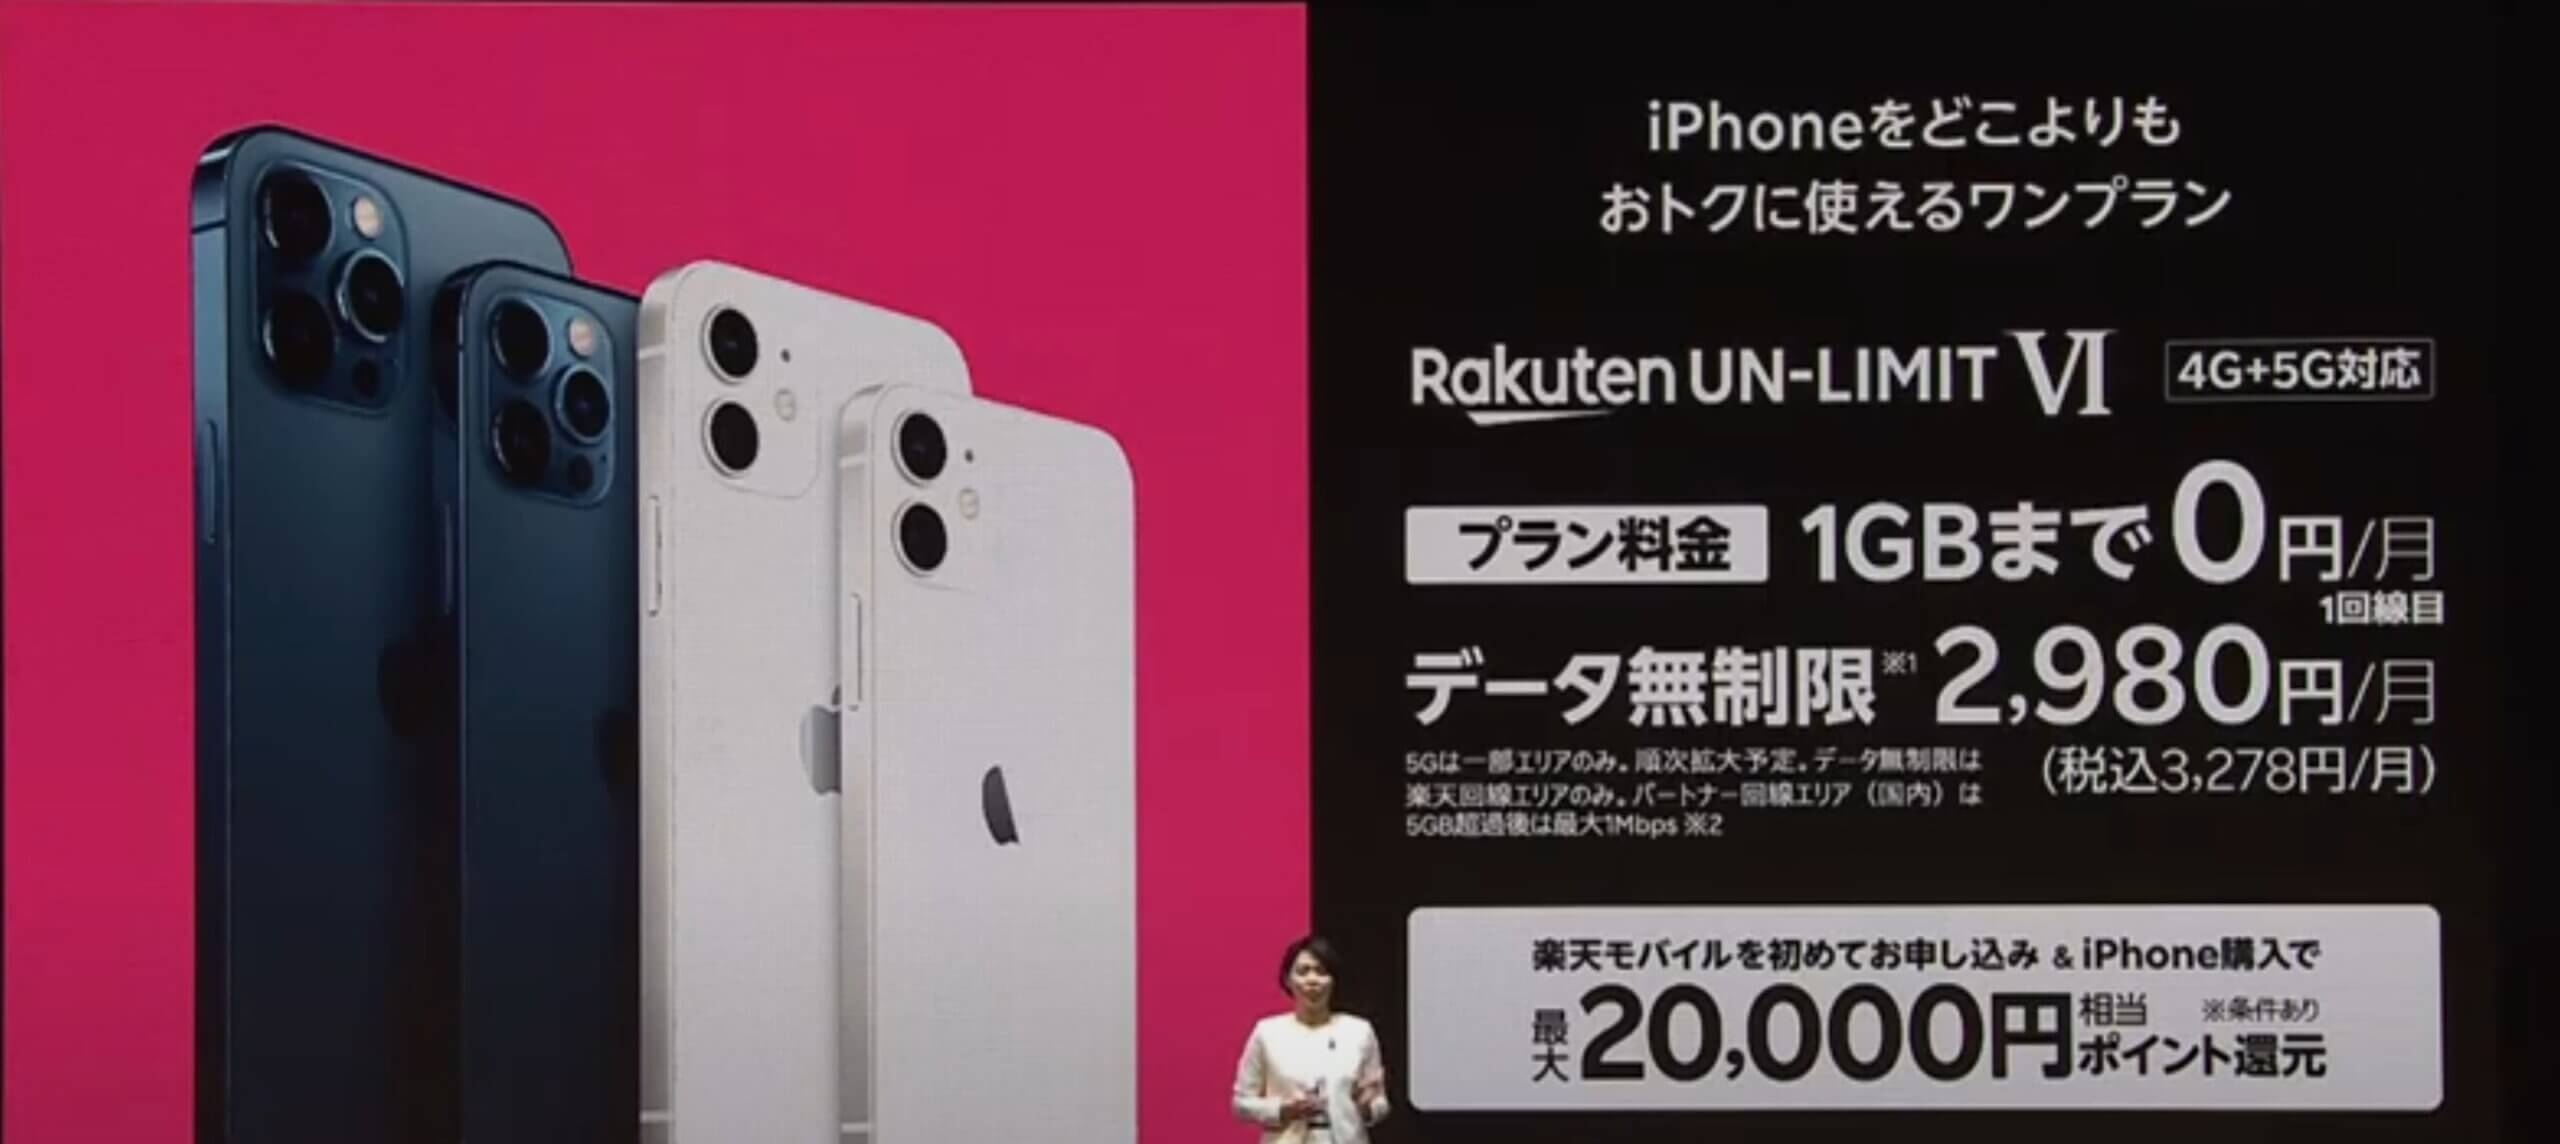 楽天モバイルでiPhoneを購入すると実質2万円相当の還元が受けられる